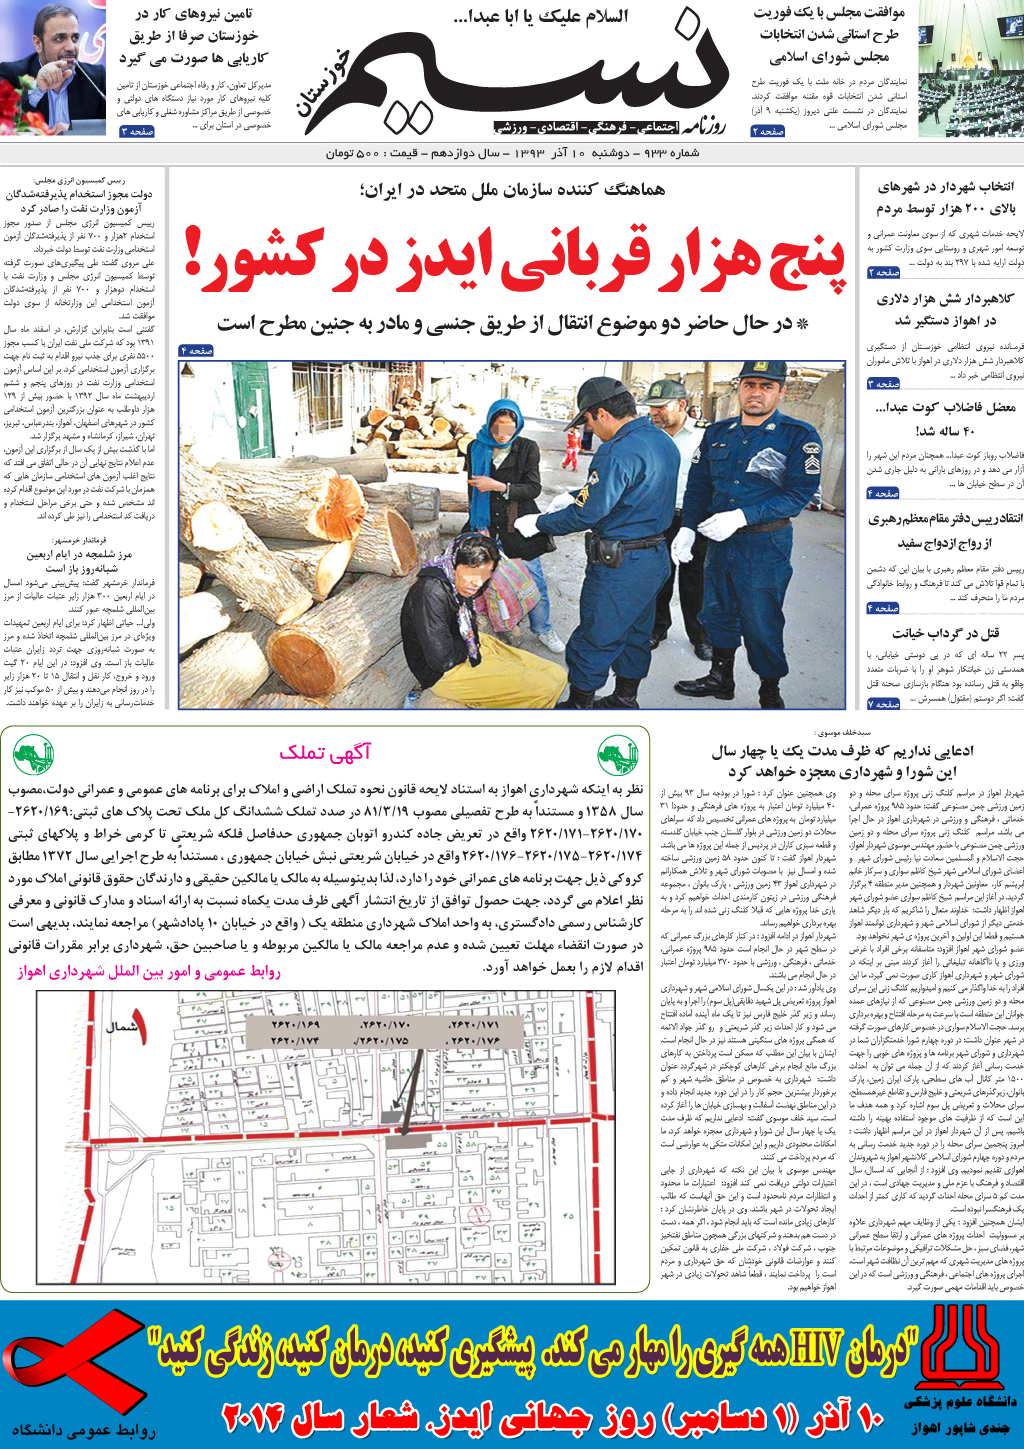 صفحه اصلی روزنامه نسیم شماره 933 